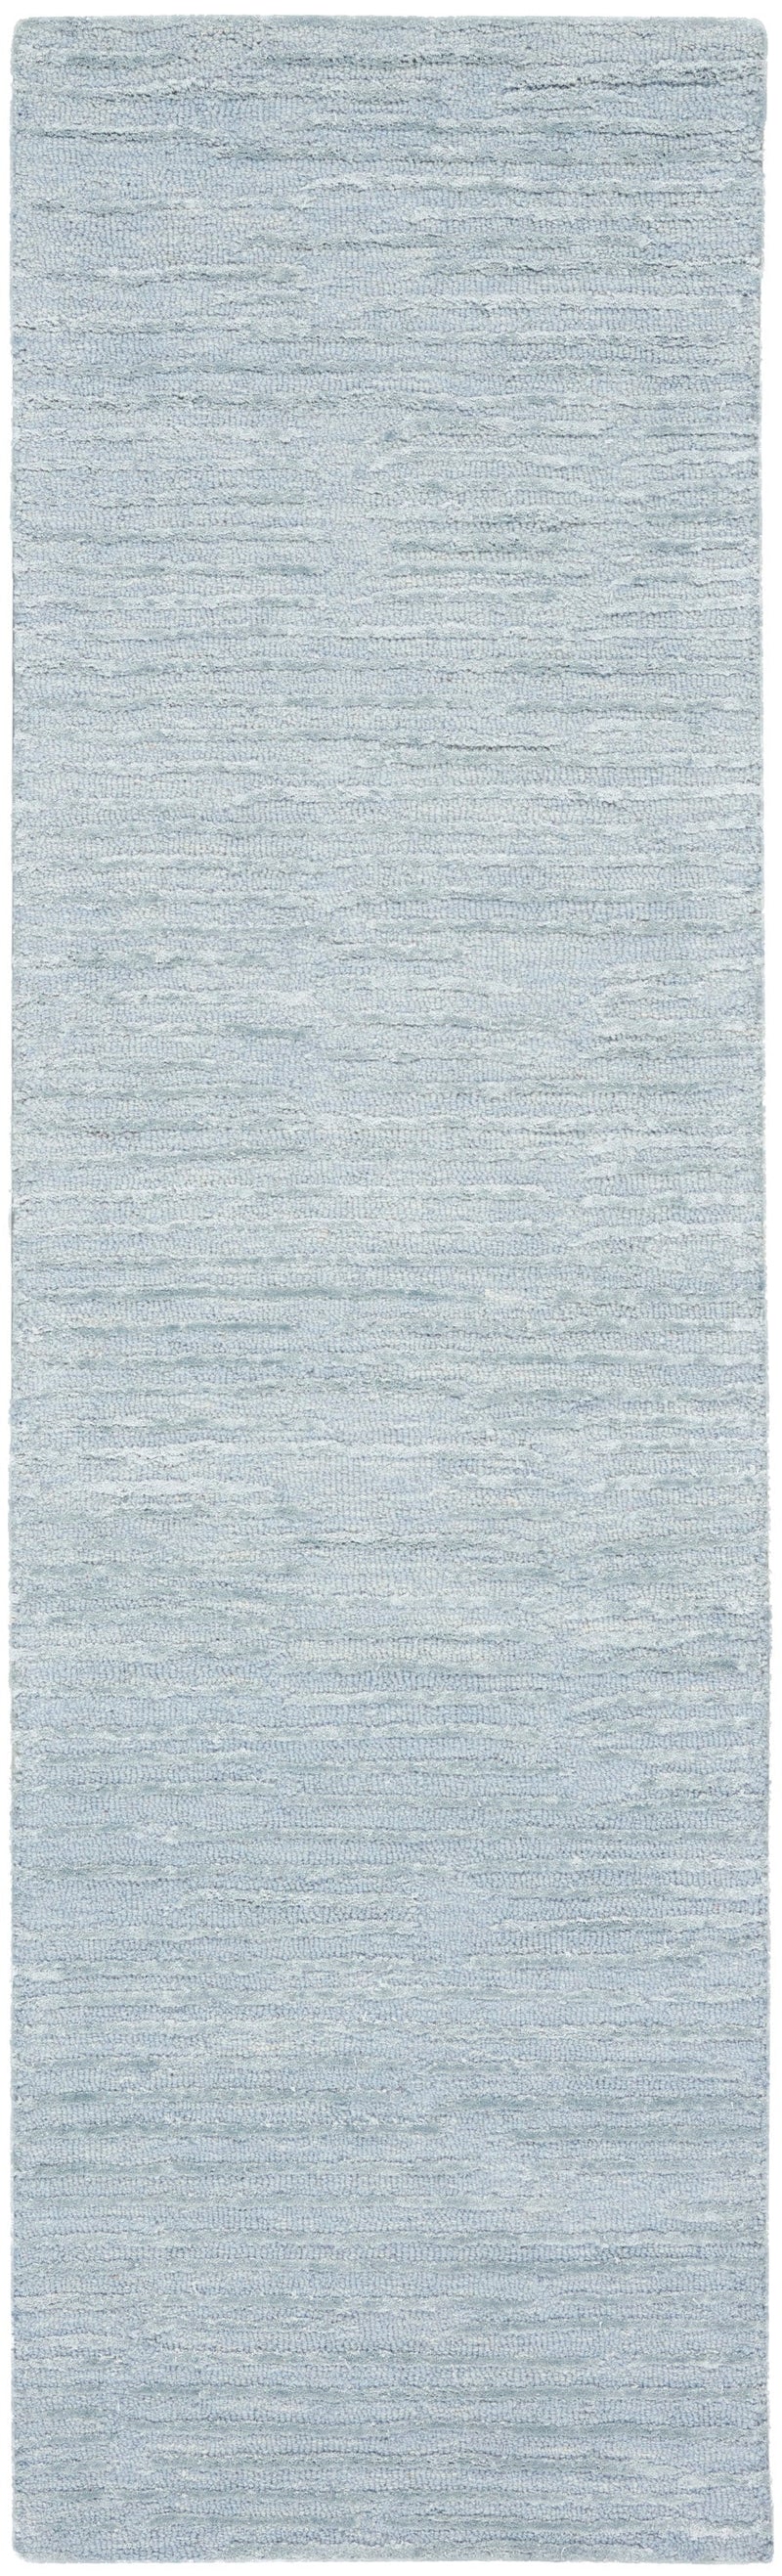 media image for ck010 linear handmade light blue rug by nourison 99446879950 redo 2 231